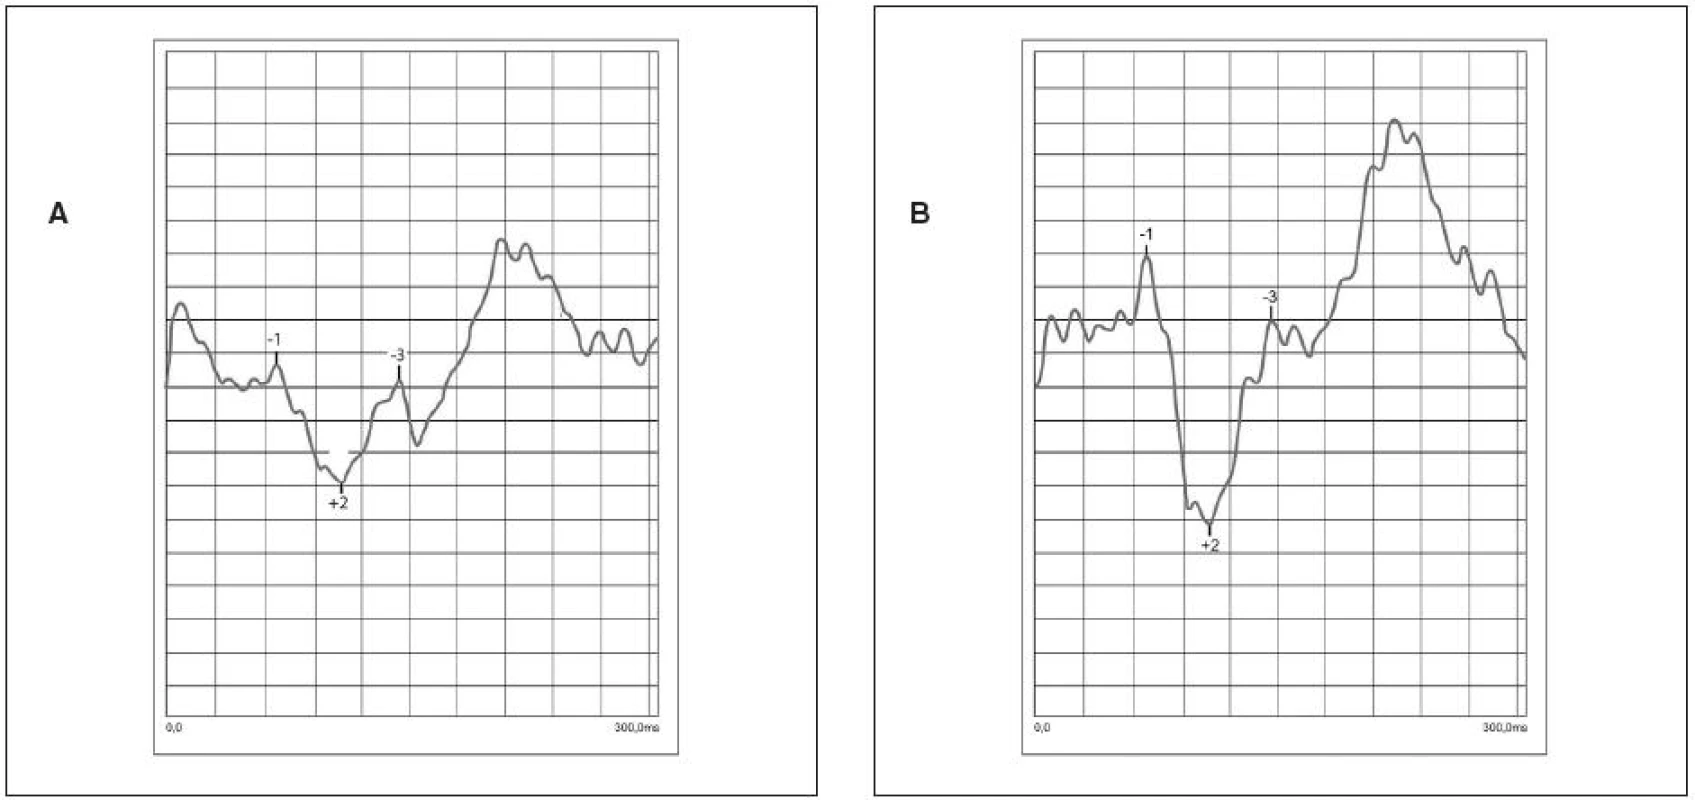 Porovnanie tvaru NPN komplexu u jednej pacientky pred započatím oklúznej liečby (a) a v priebehu oklúznej liečby (b) s úpravou zrakovej ostrosti o 2 riadky Snellenových optotypov. Nastalo zlepšenie v predĺžení amplitúd aj skrátení latencií
